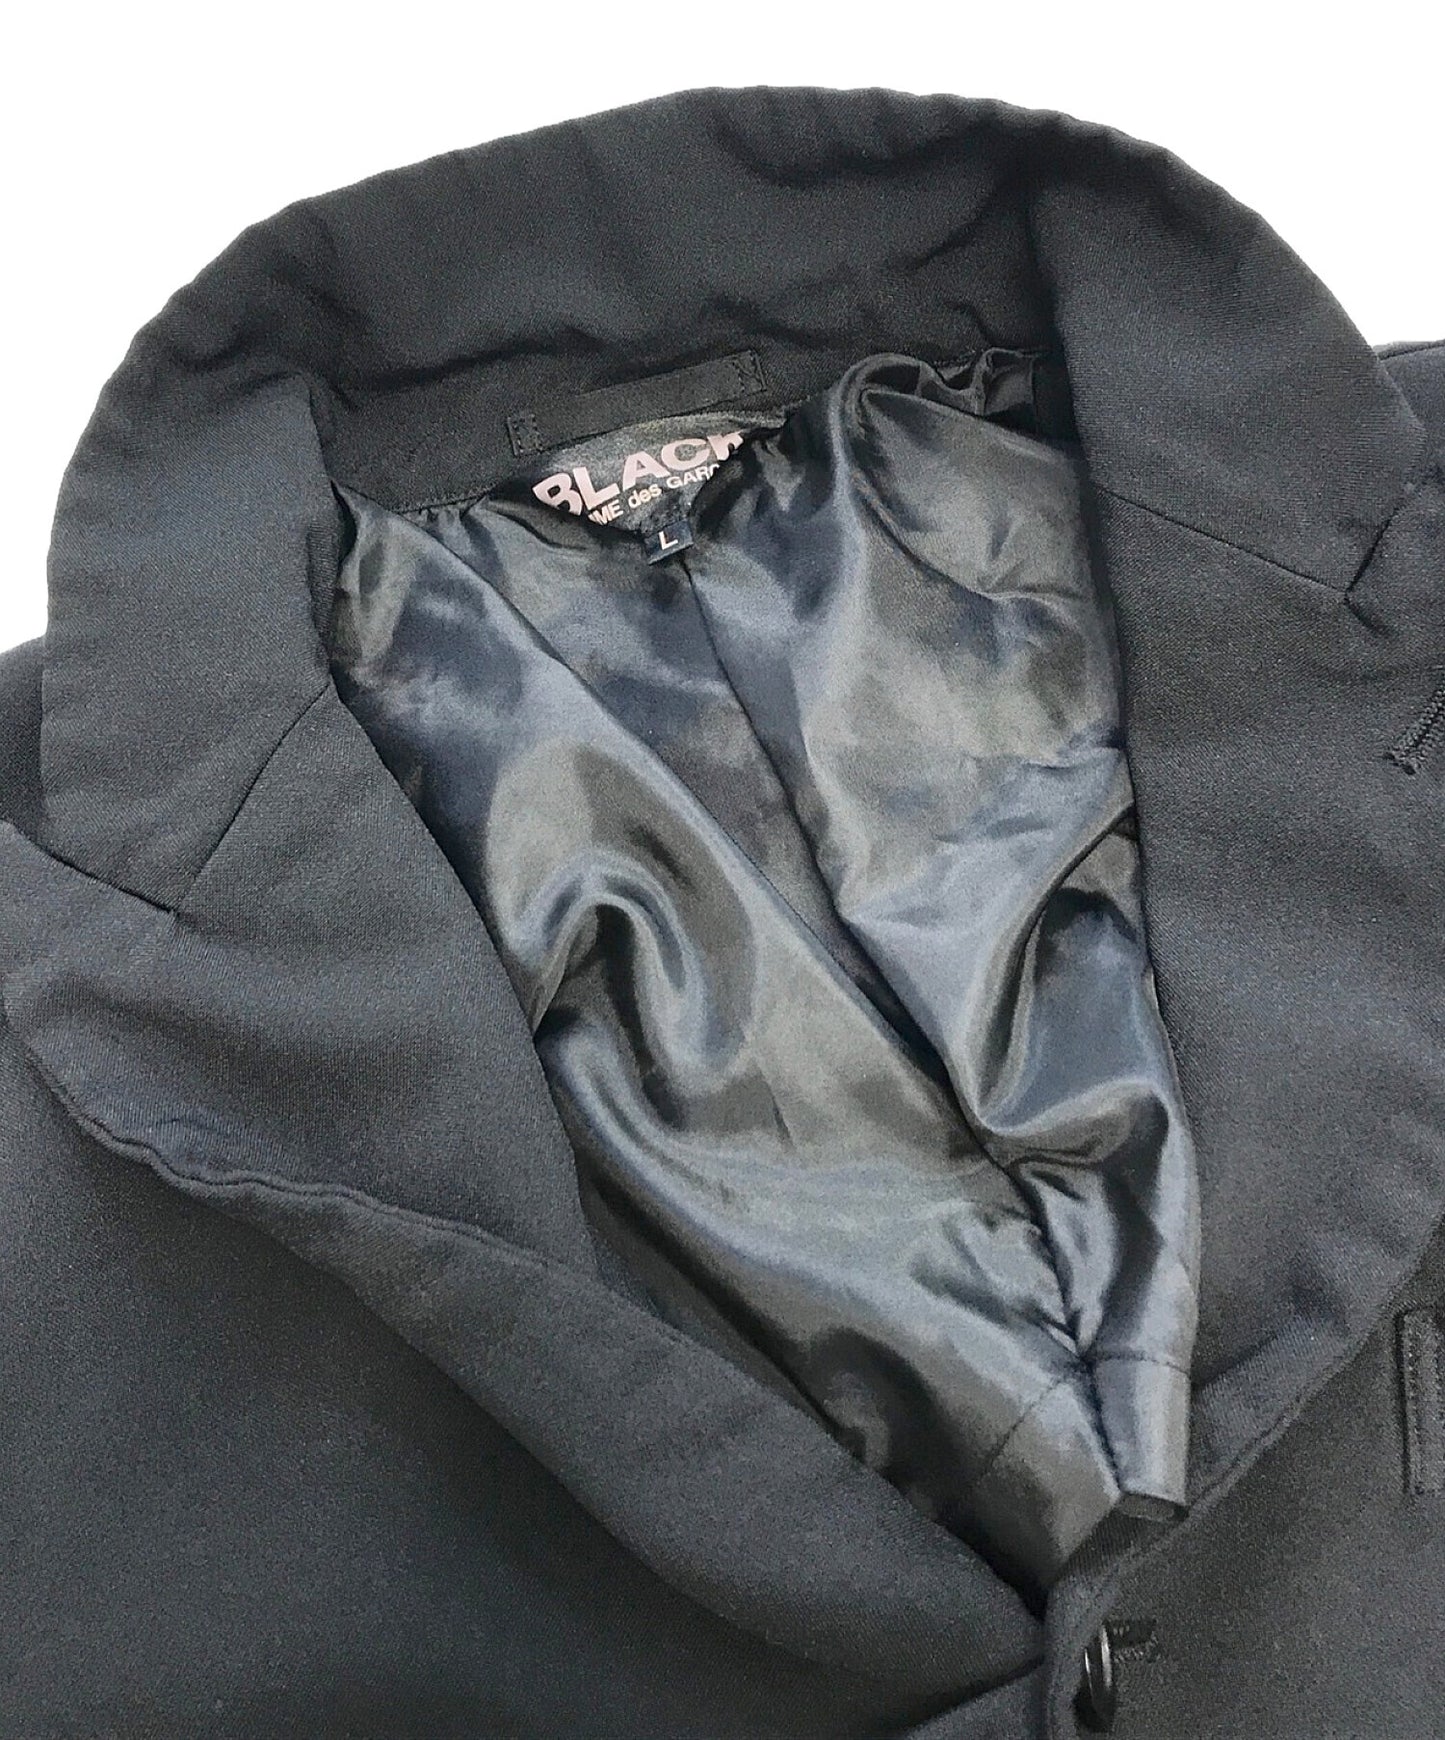 Black Comme des Garcons 백 커팅 재킷 1A-J012